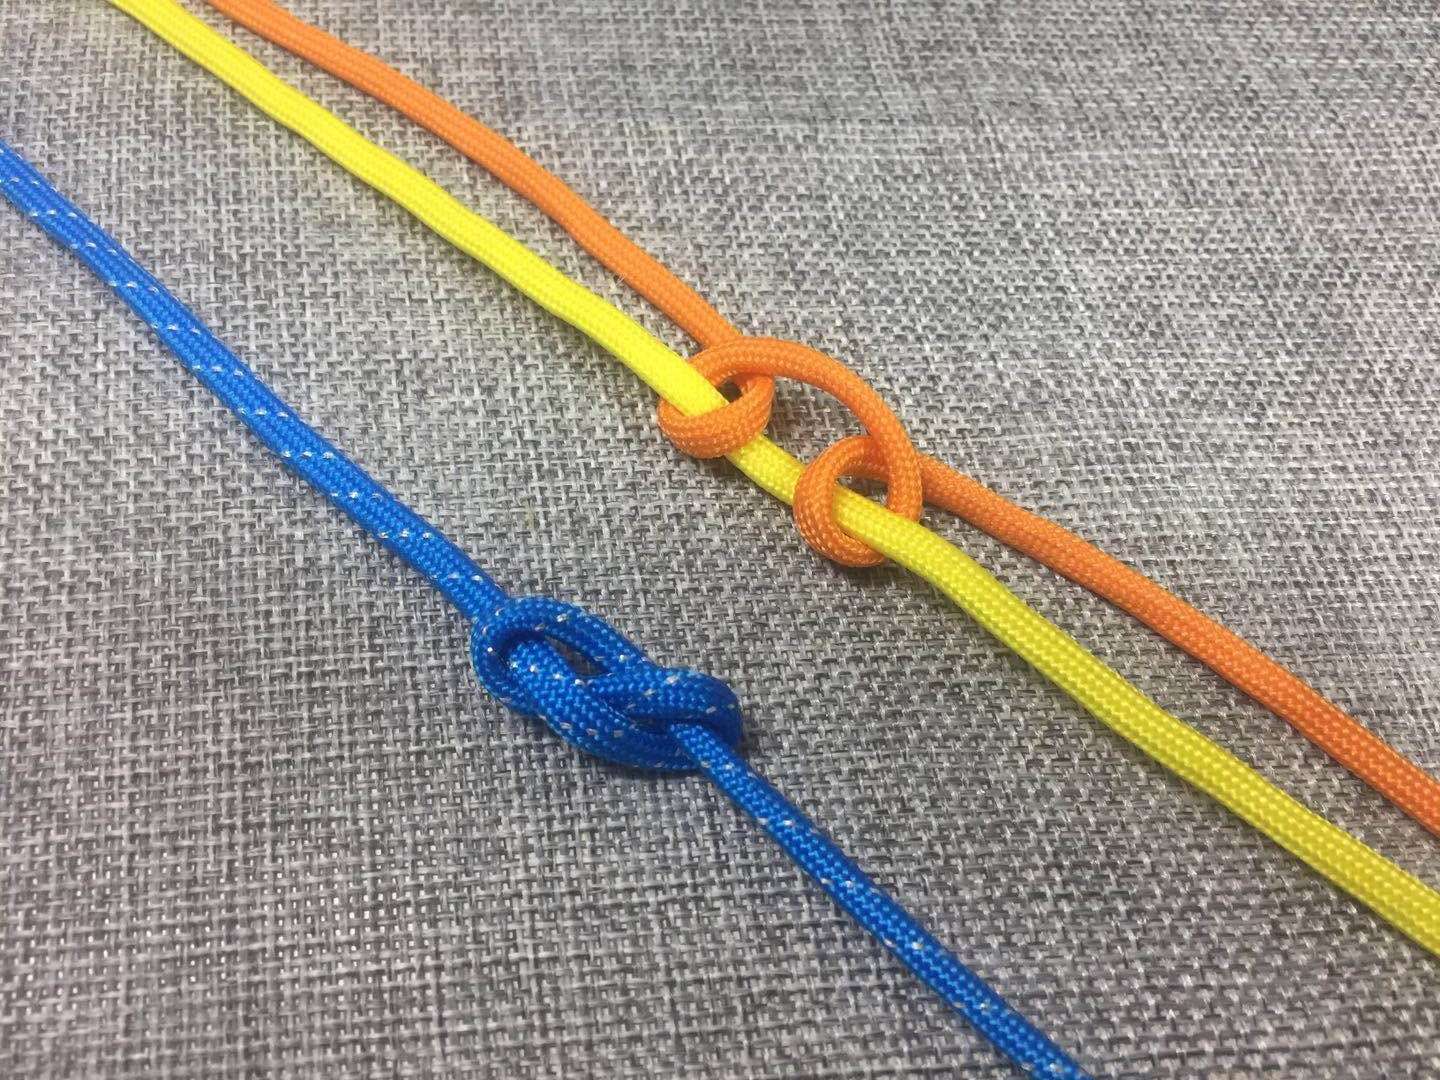 同心结变形的雀头结，一般绕线同心结用于手绳和项链绳。8字结用于手绳。